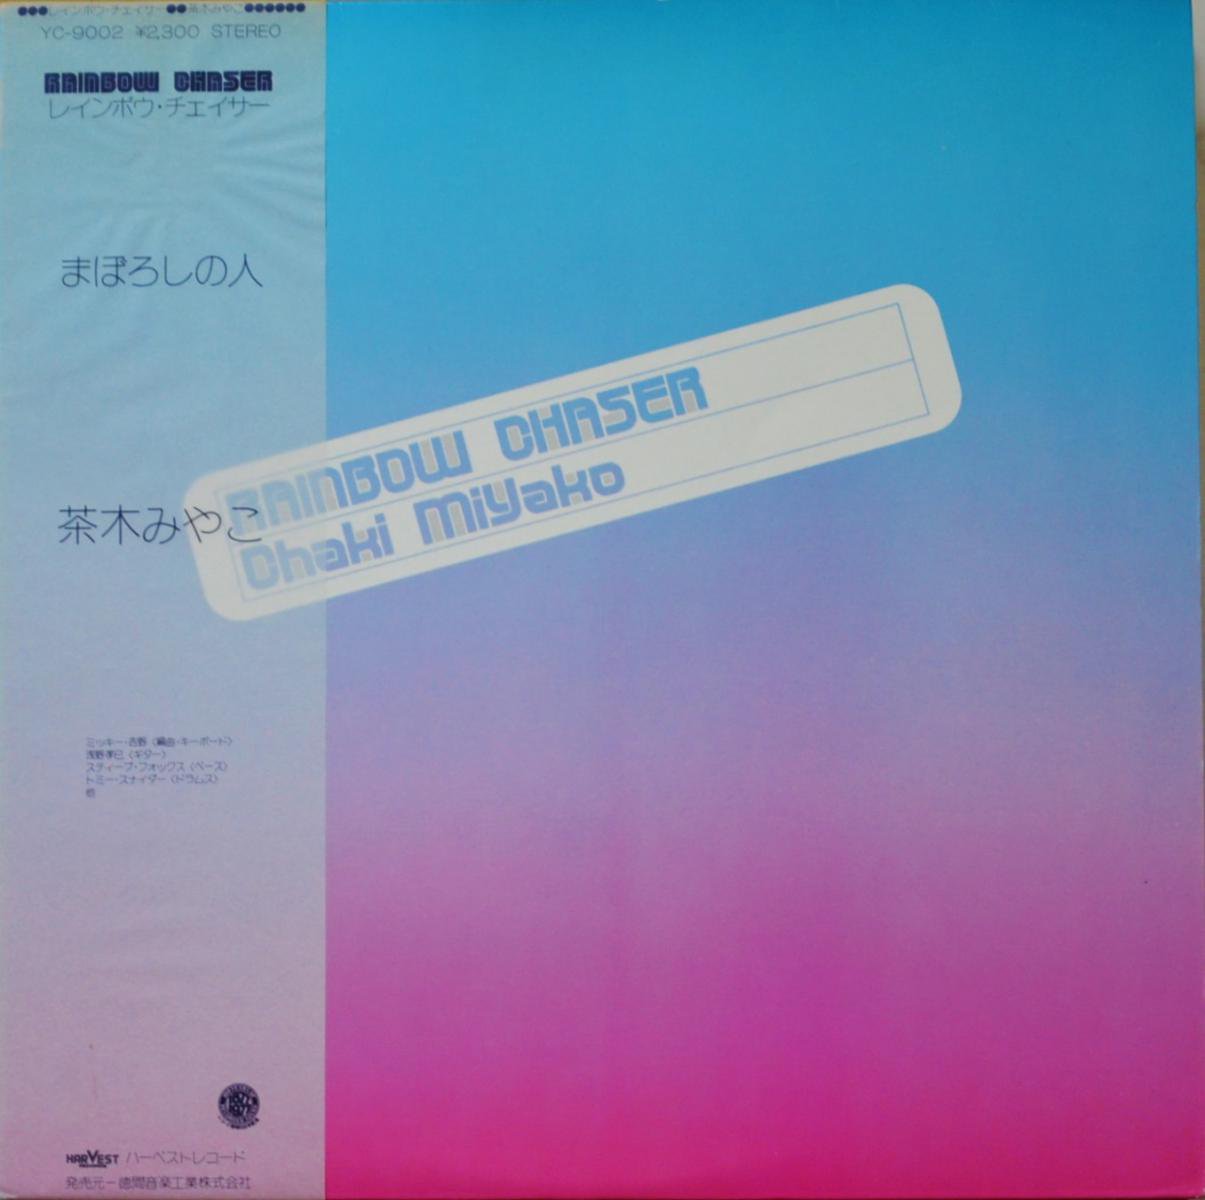 茶木みやこ CHAKI MIYAKO / レインボウ・チェイサー RAINBOW CHASER (LP)